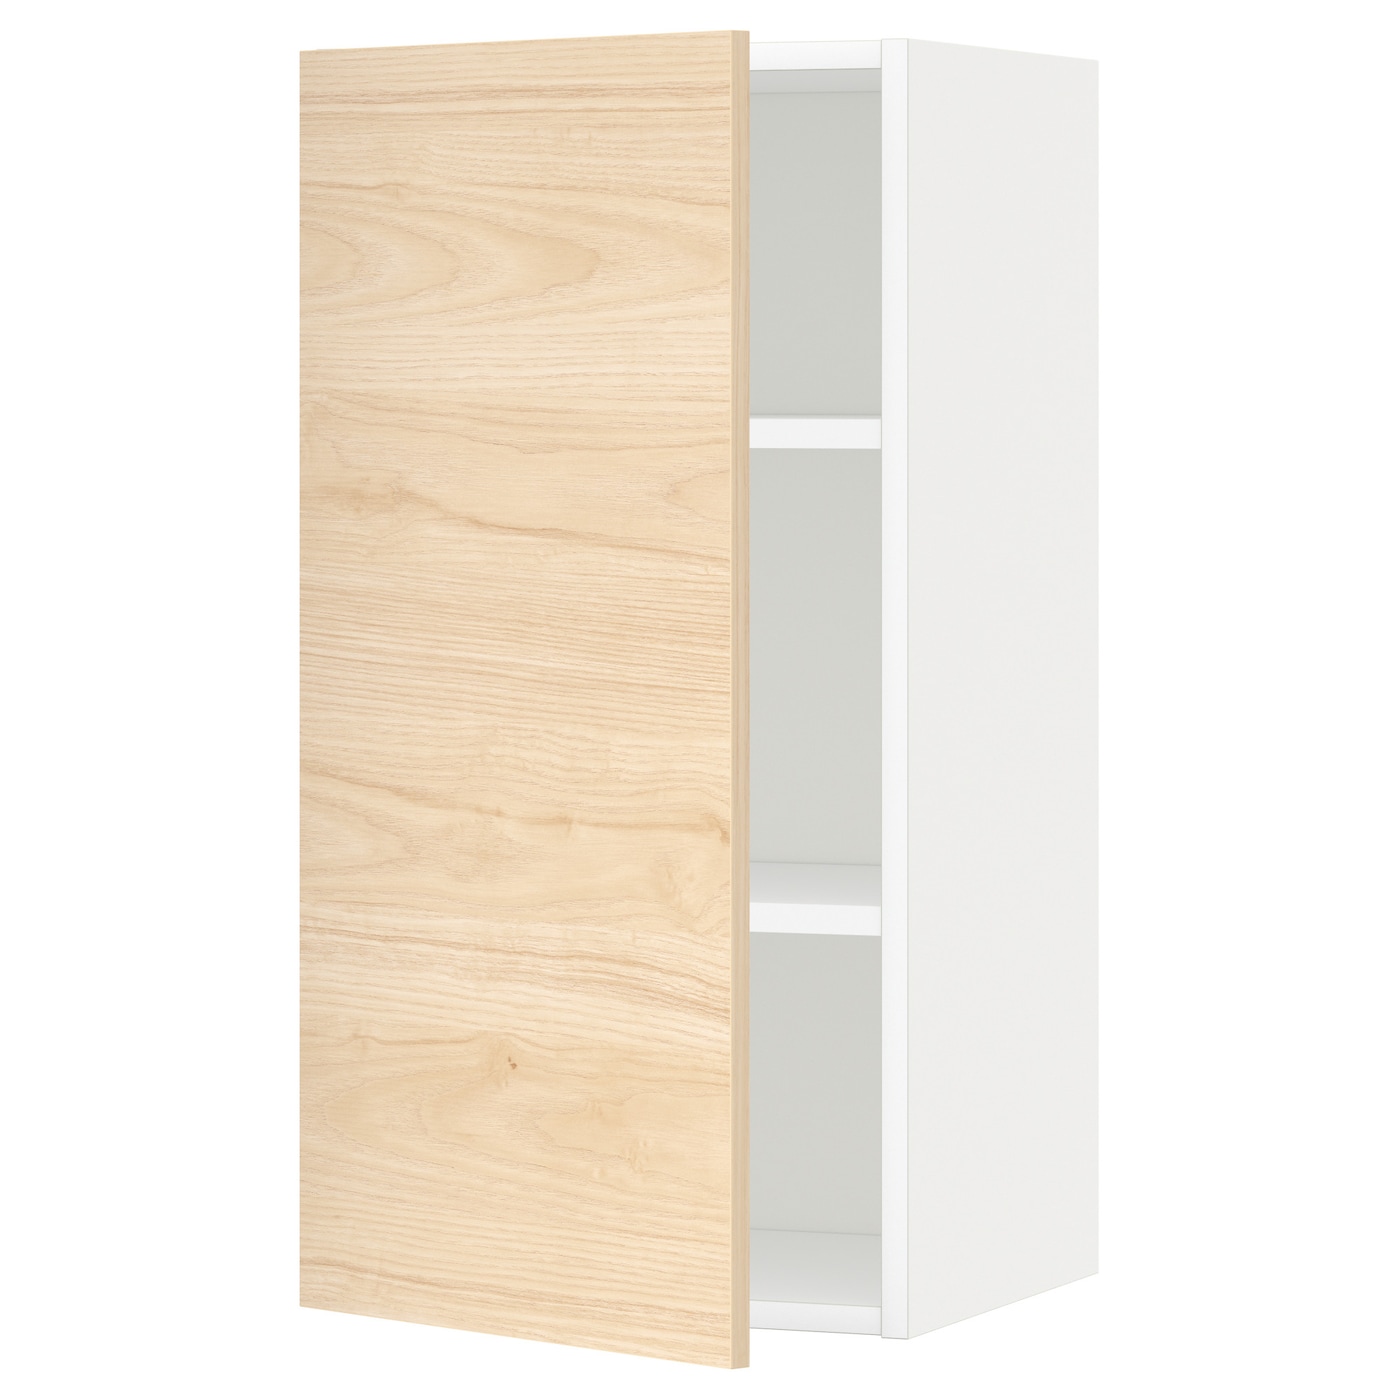 Навесной шкаф с полкой - METOD IKEA/ МЕТОД ИКЕА, 80х40 см, белый/под беленный дуб